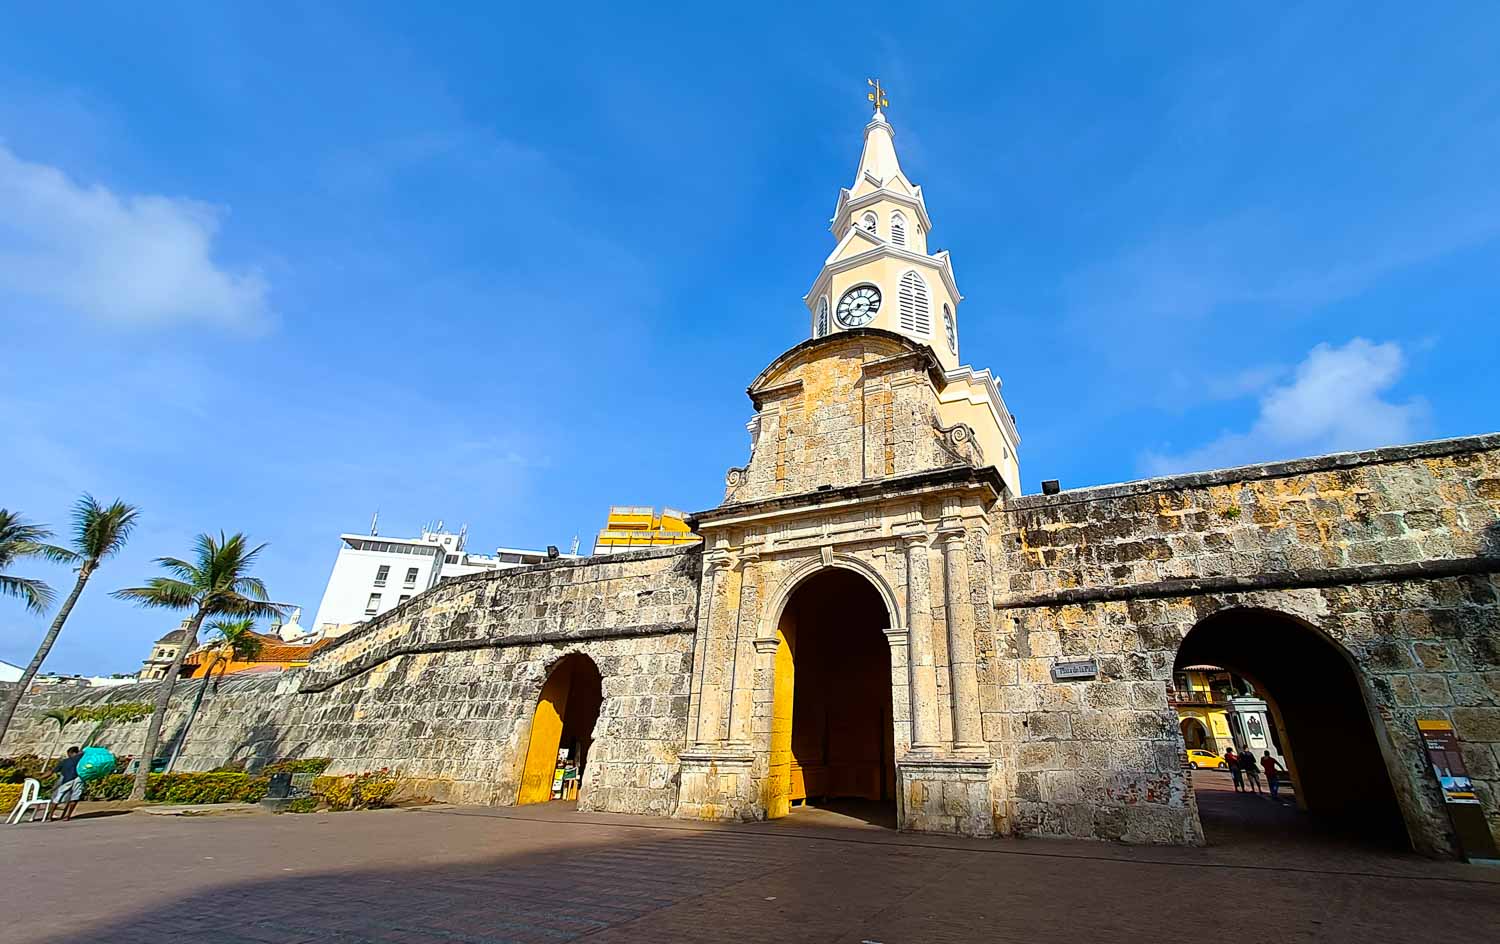 The Cartagena clock tower